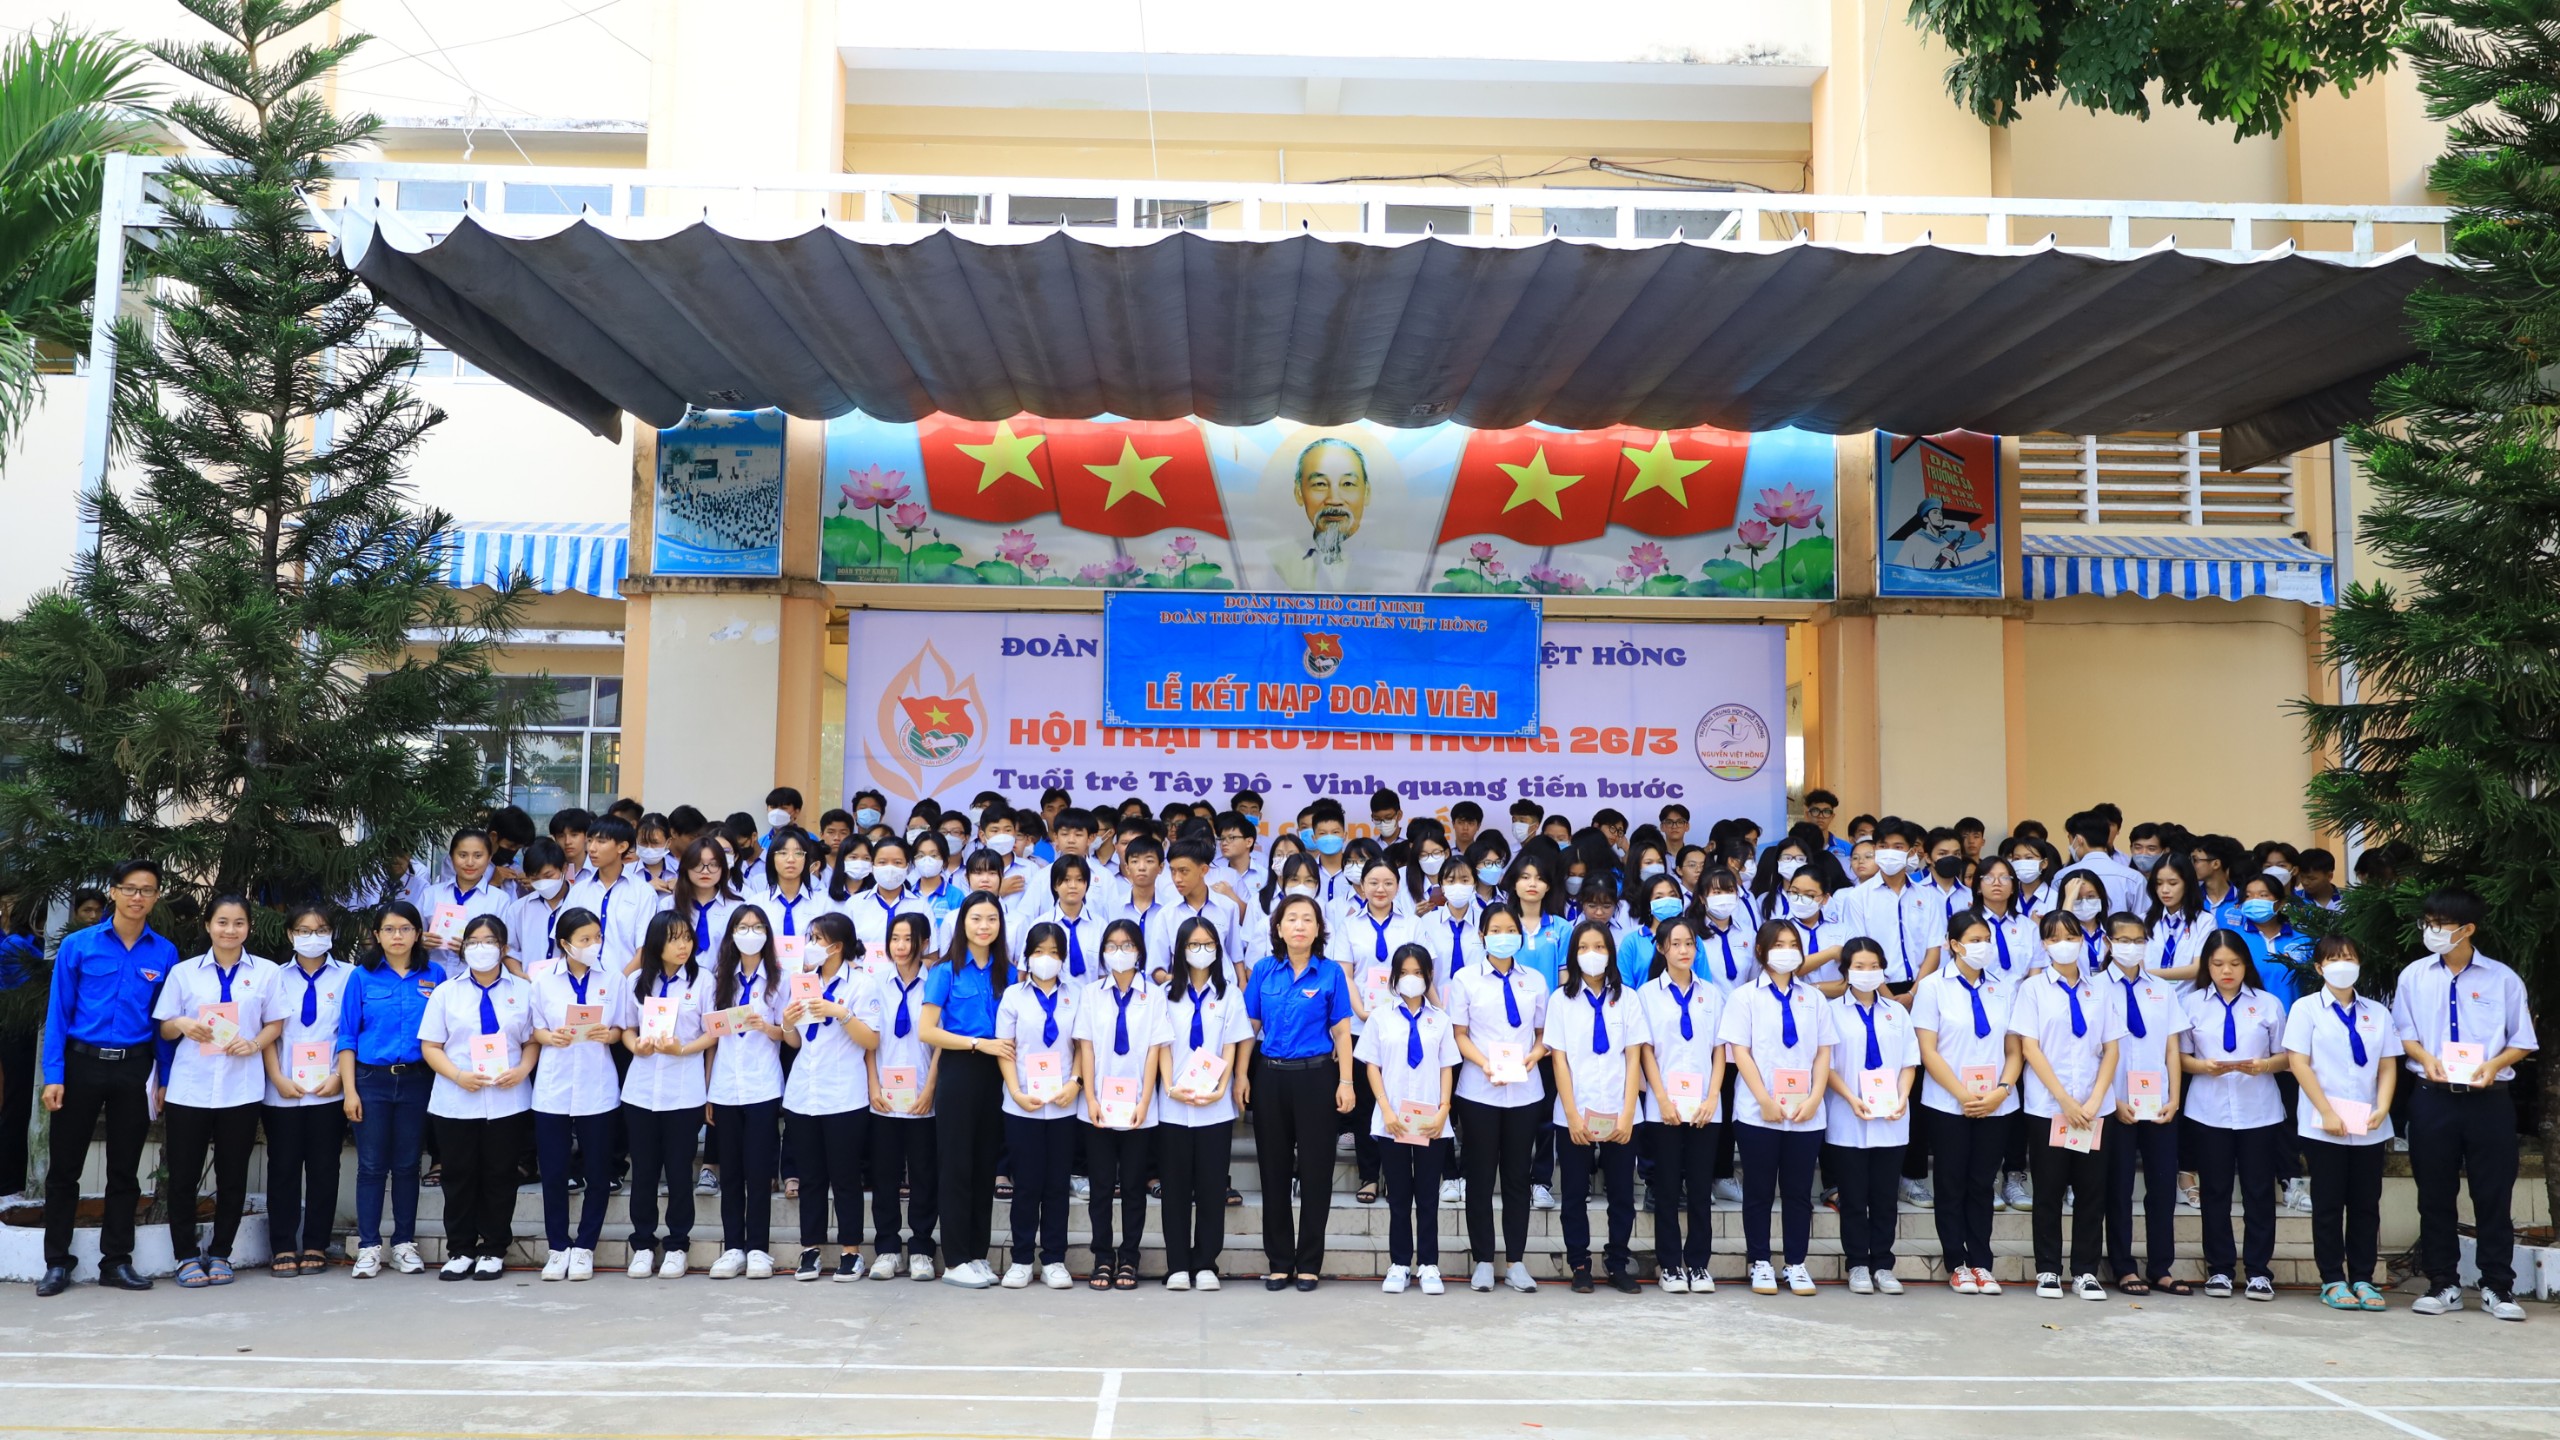 Các em học sinh được vinh dự kết nạp Đoàn vào đúng dịp Kỷ niệm 92 năm ngày thành lập Đoàn Thanh niên Cộng sản Hồ Chí Minh (26/3/1931 - 26/3/2023).